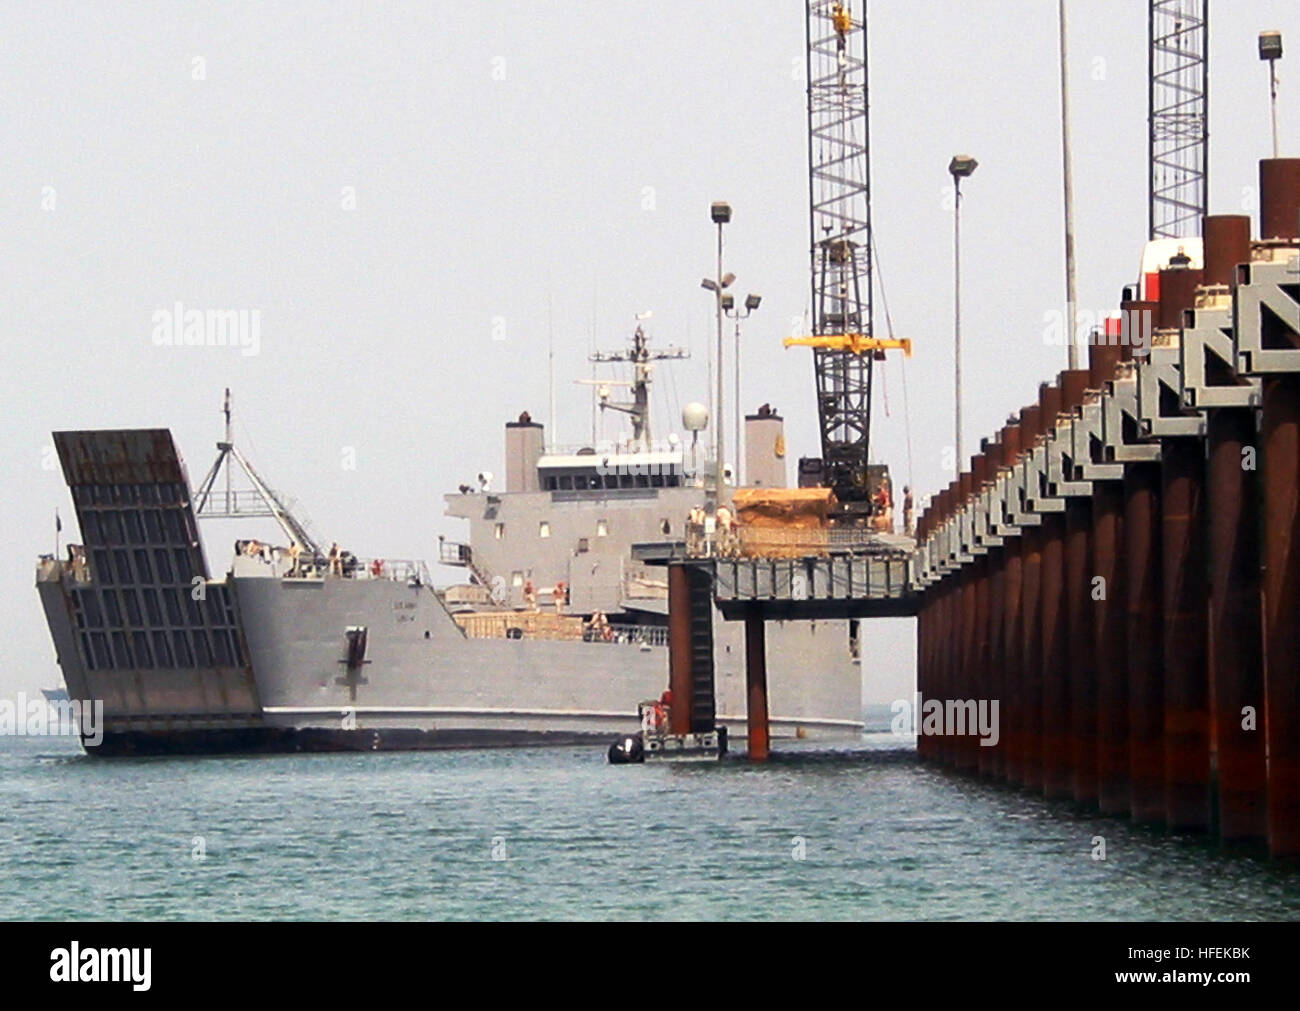 030511-N-1050K-029 Camp patriota, Kuwait (11 maggio 2003) -- Un U.S. Esercito il supporto logistico nave (LSV) tira al fianco degli Stati Uniti Navy elevata System-Modular Causeway (ELCAS-M) per le apparecchiature offload durante continua logistica comune oltre la riva (JLOTS) operazioni. Il 275-piedi lungo GSS è la più grande nave l'ELCAS-M è in grado di gestire e viene utilizzato per l'alimentazione militare trasporto di personale e materiale rotabile Veicoli e contenitore cargo. Stati Uniti Foto di Marina dal giornalista di prima classe Giuseppe Krypel. (Rilasciato) Navy US 030511-N-1050K-029 U.S. Esercito il supporto logistico nave (LSV) tira al fianco degli Stati Uniti Navy Foto Stock